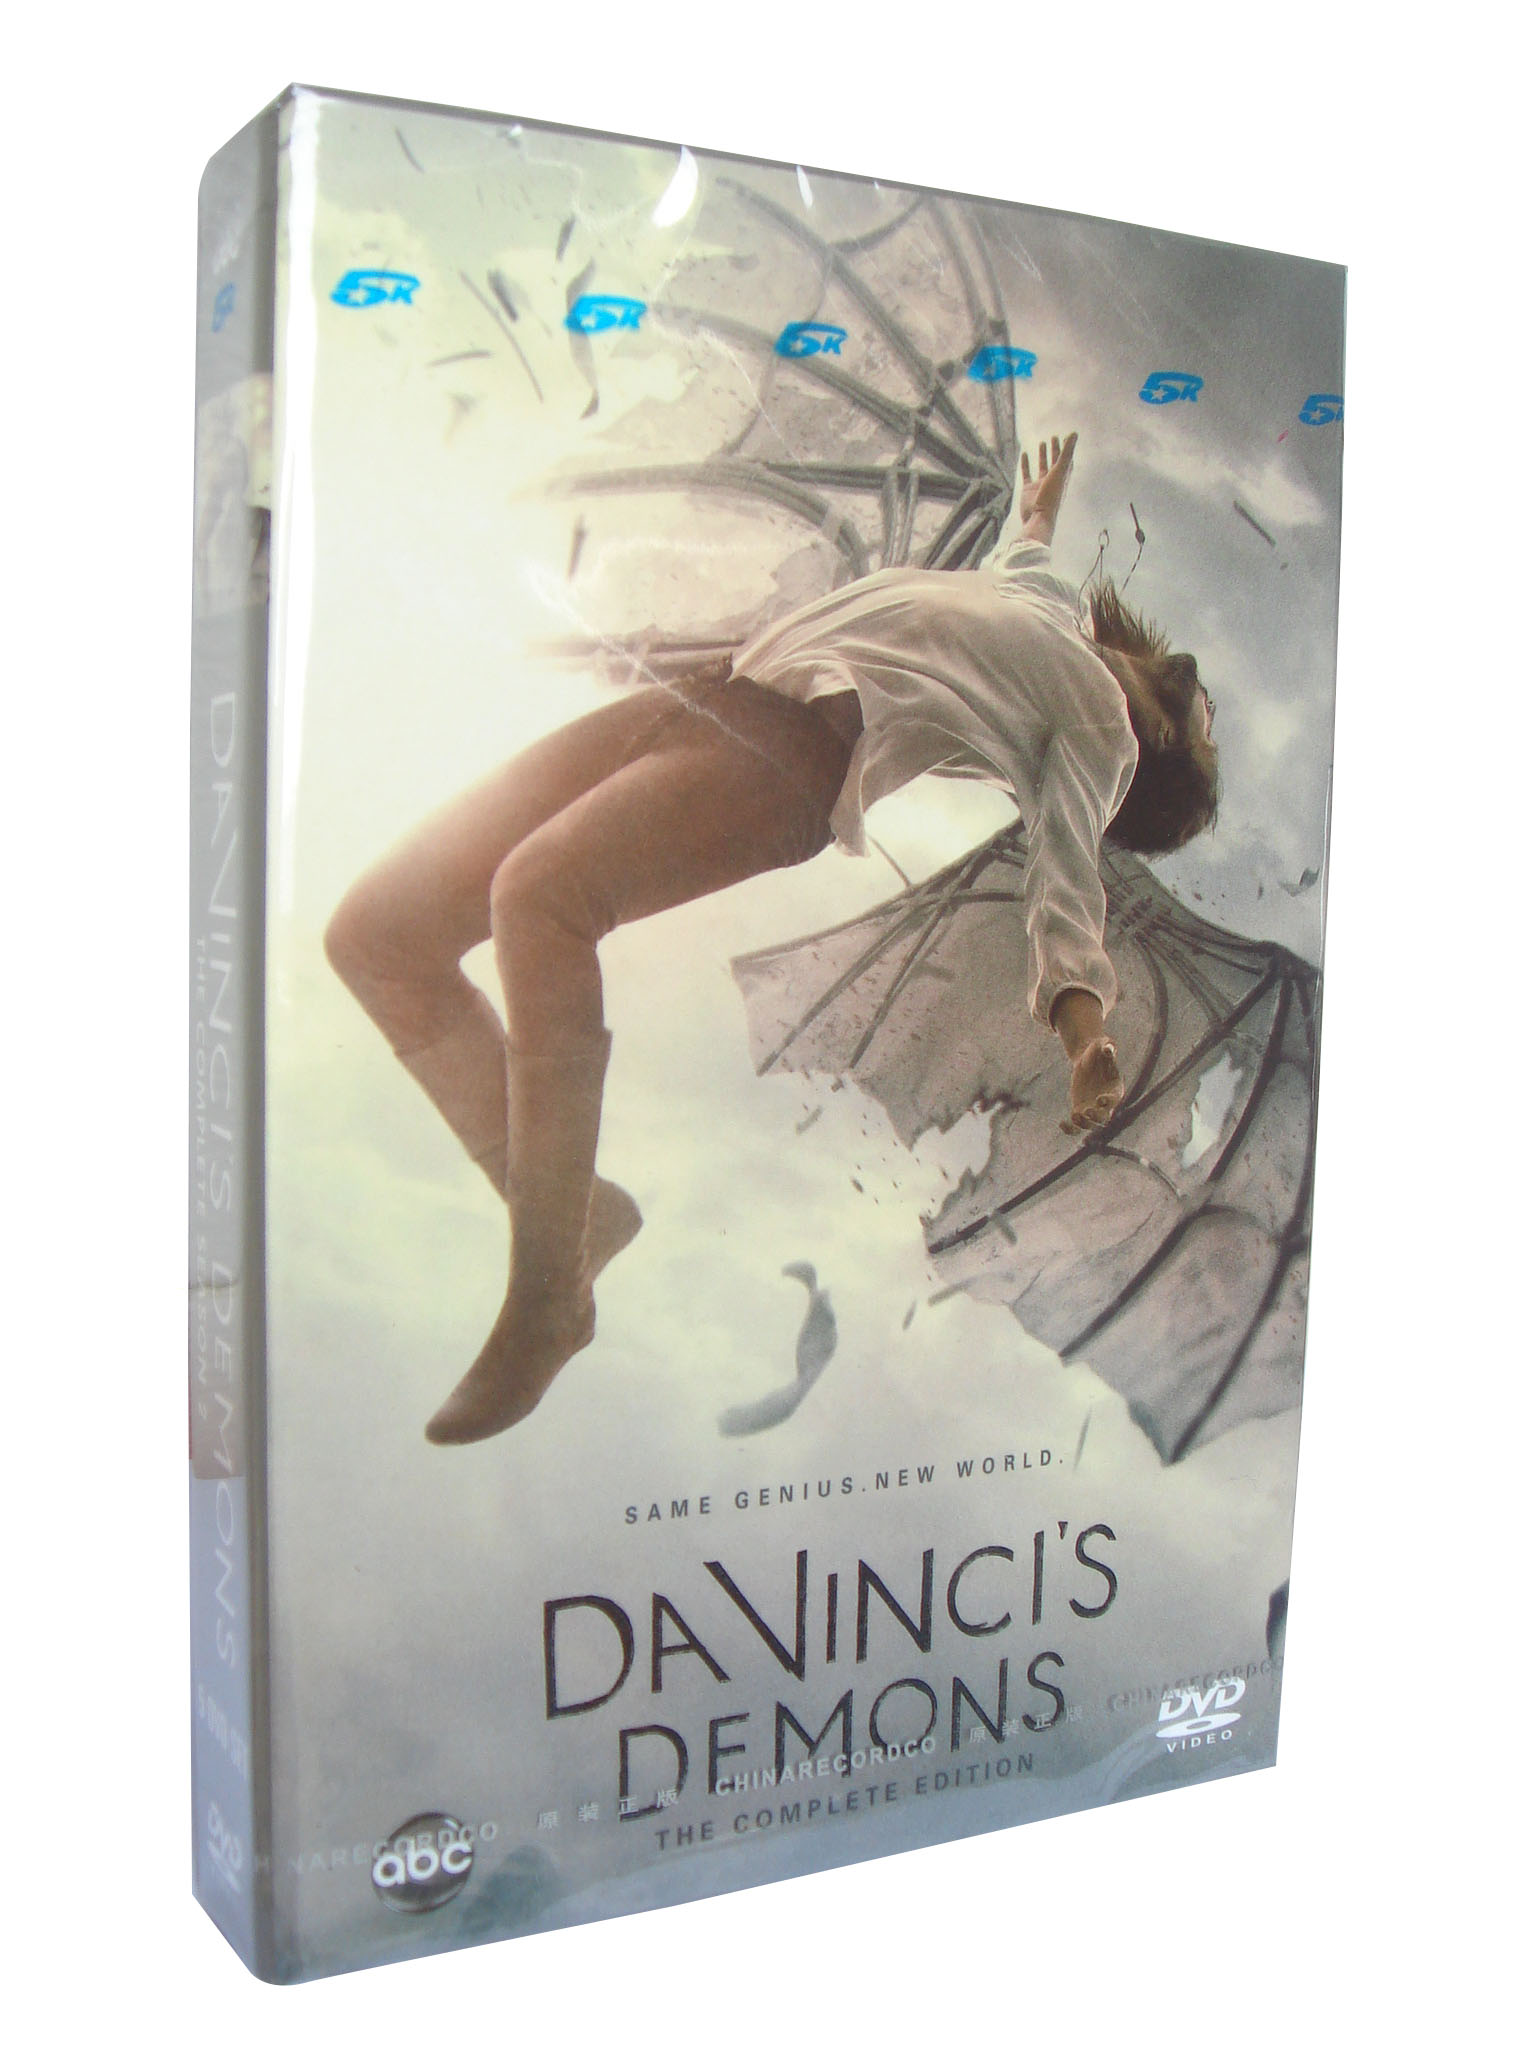 Davinci's Demons Season 2 DVD Box Set